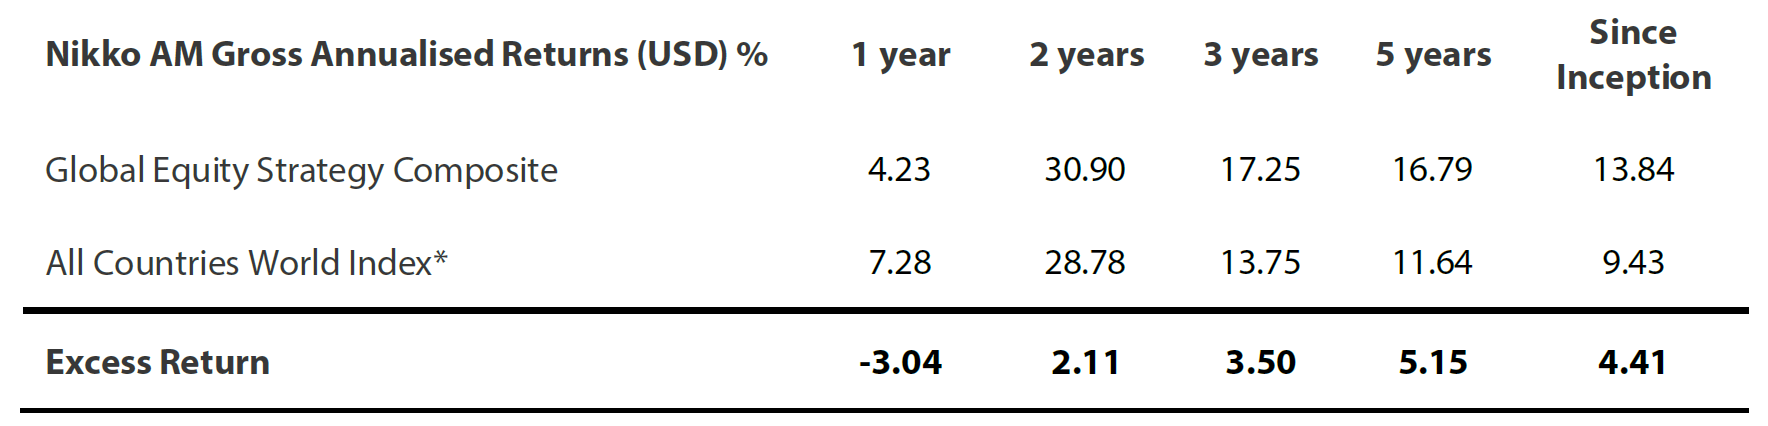 Nikko AM Gross Annualised Returns (USD)